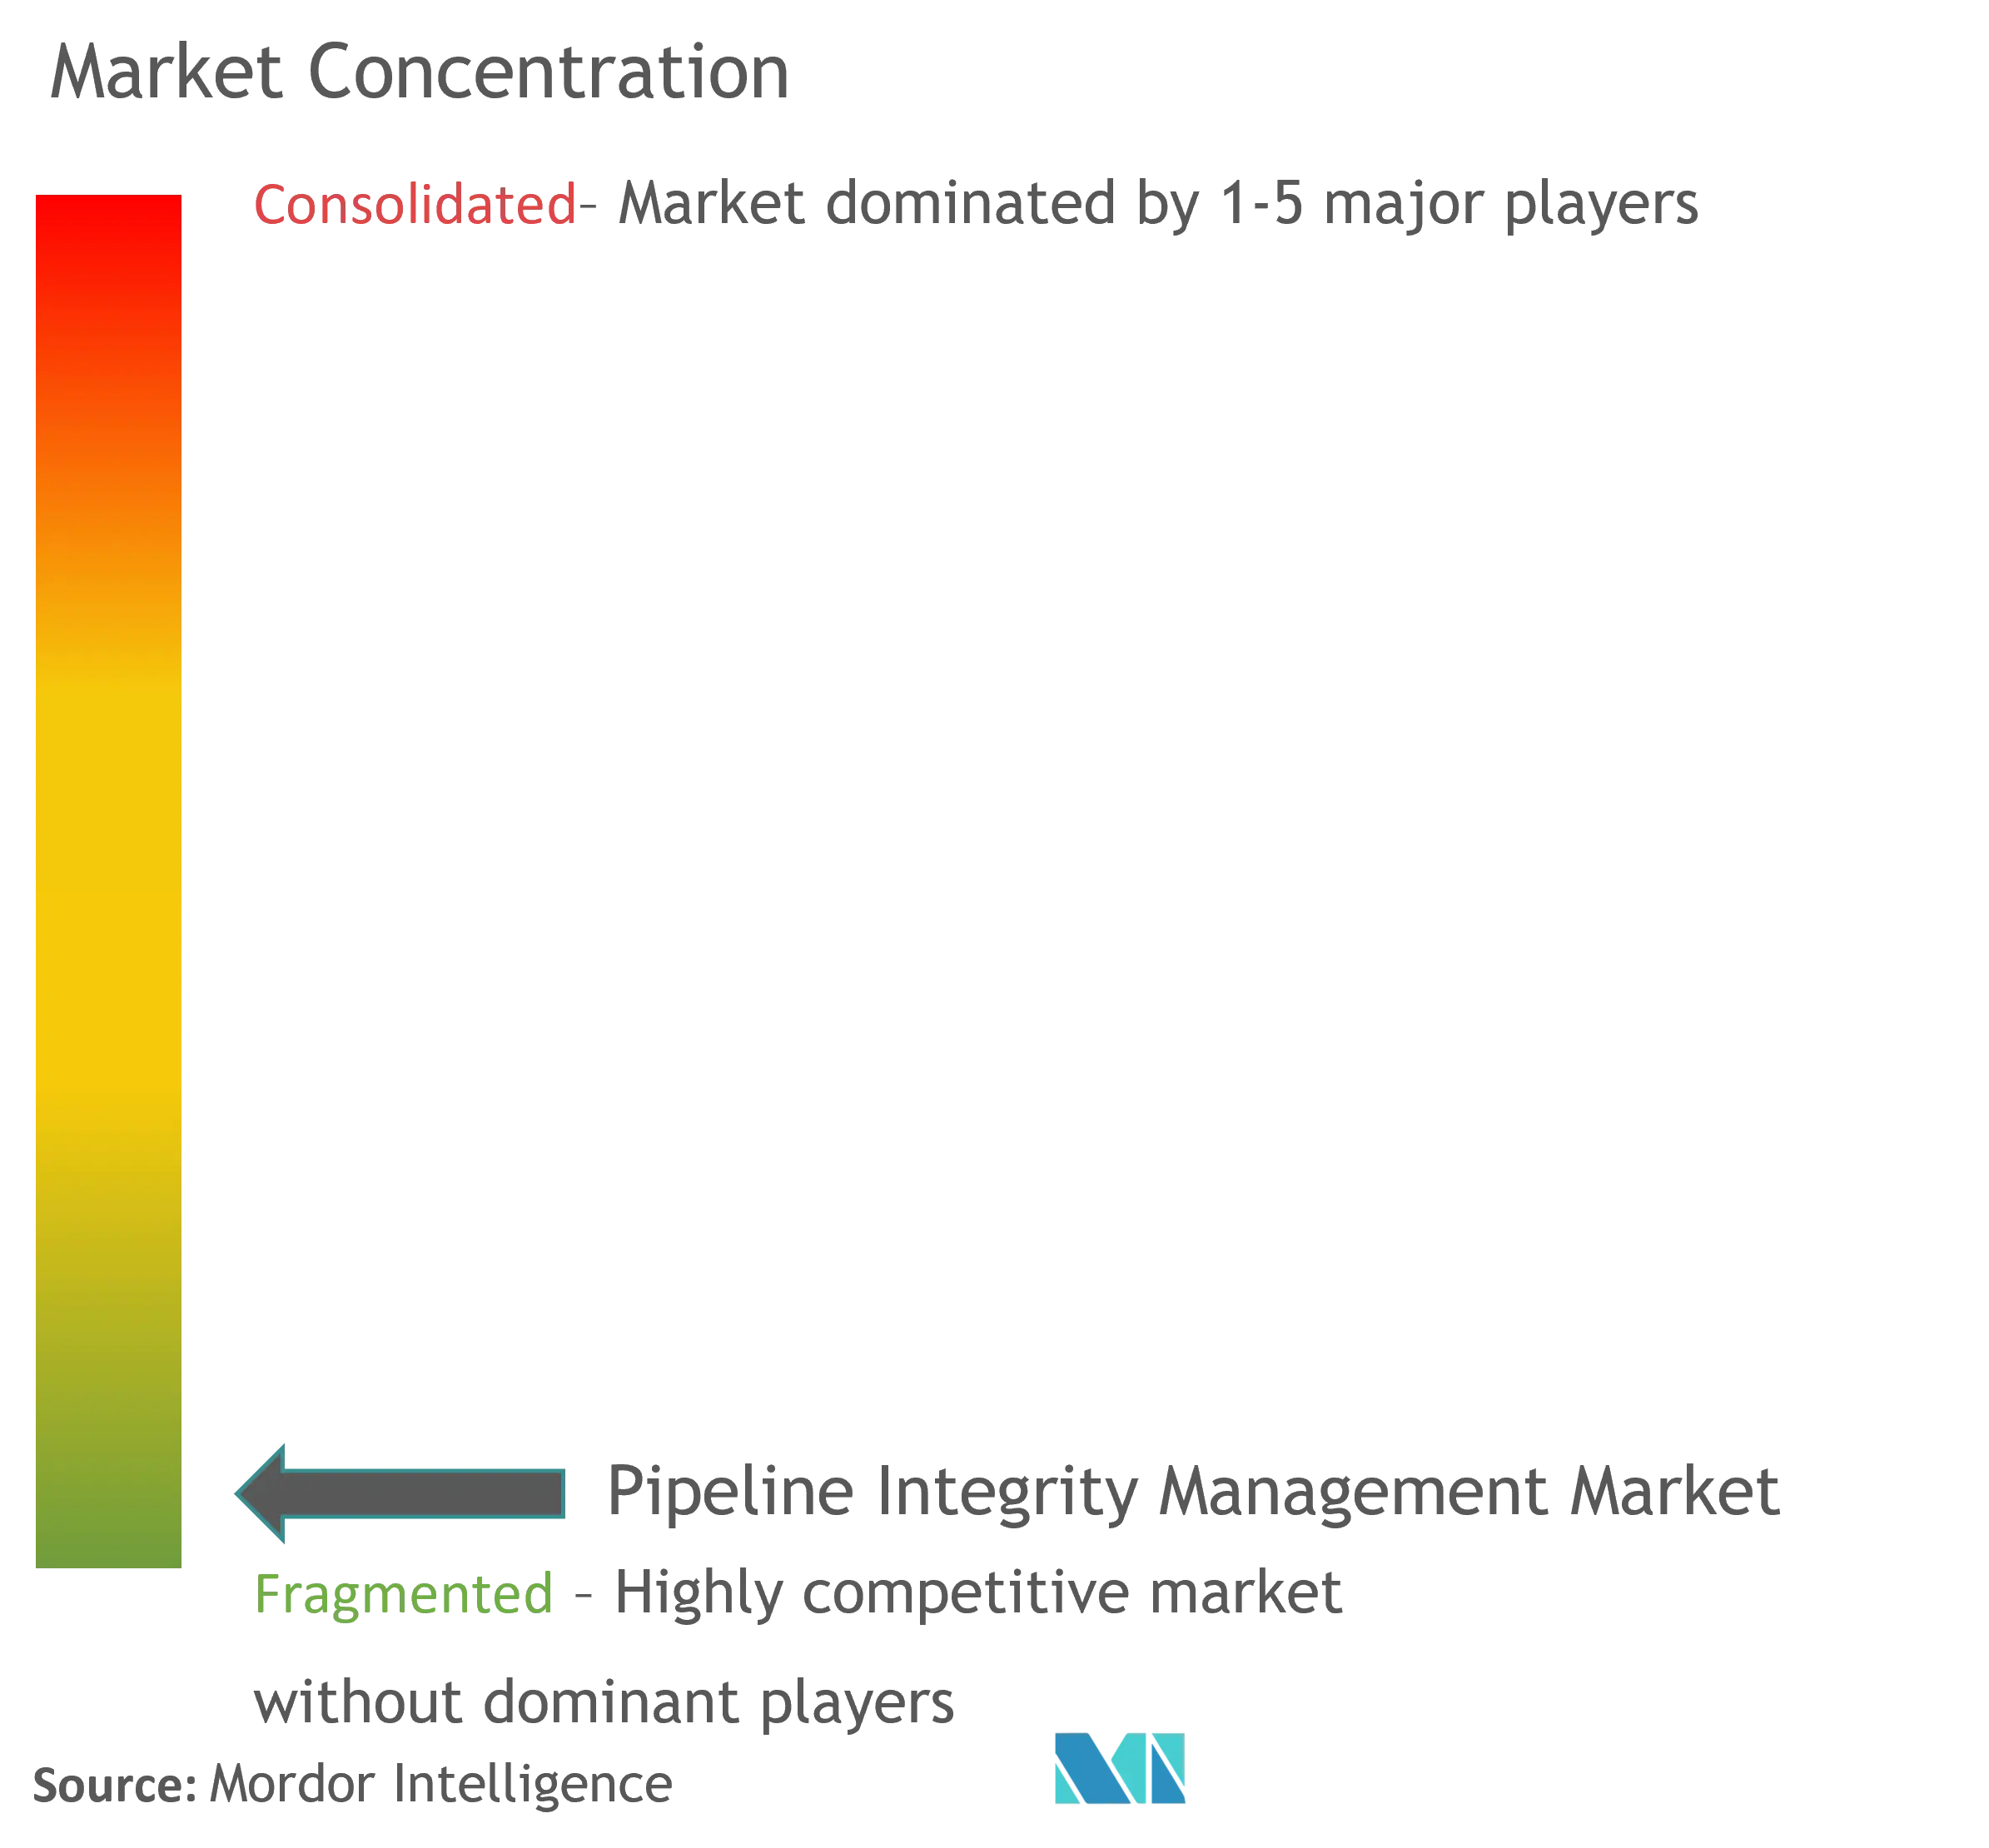 Marktkonzentration für integriertes Pipeline-Management